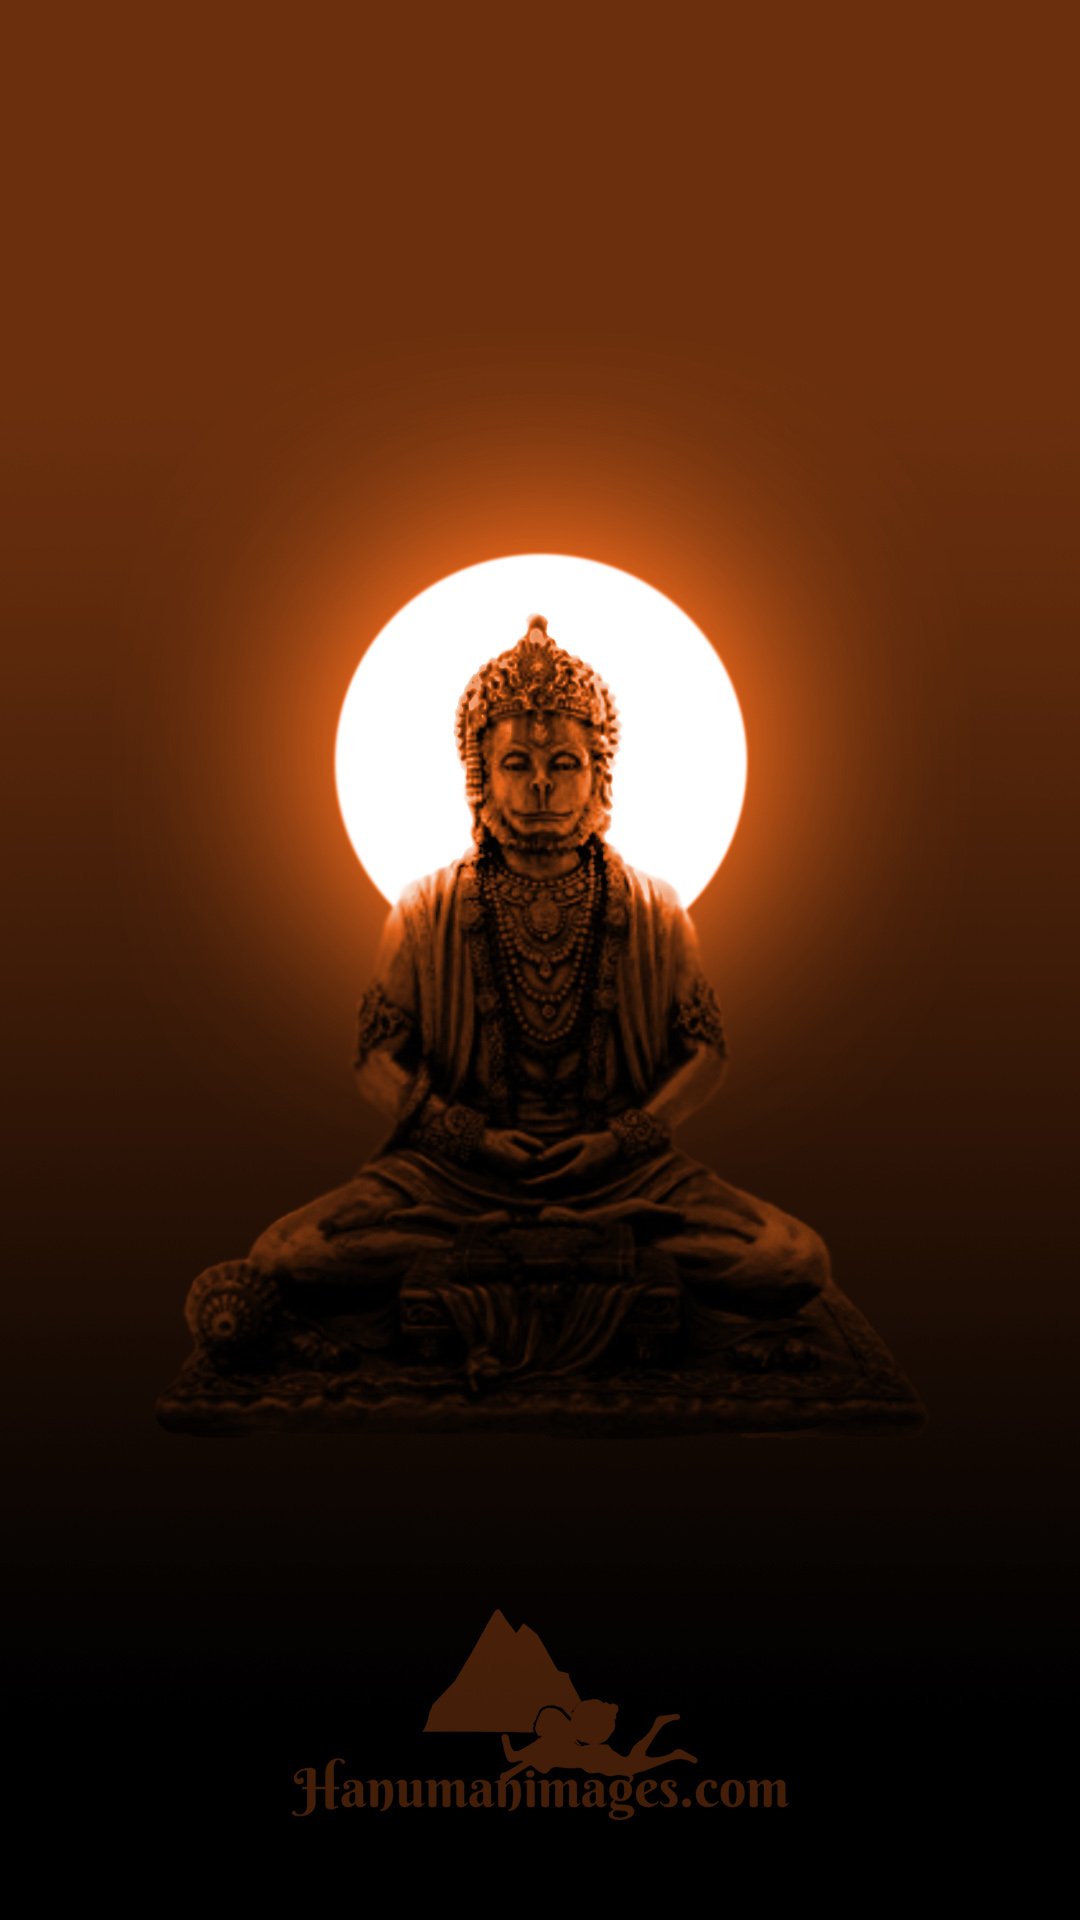 Lord Hanuman Ji Meditation